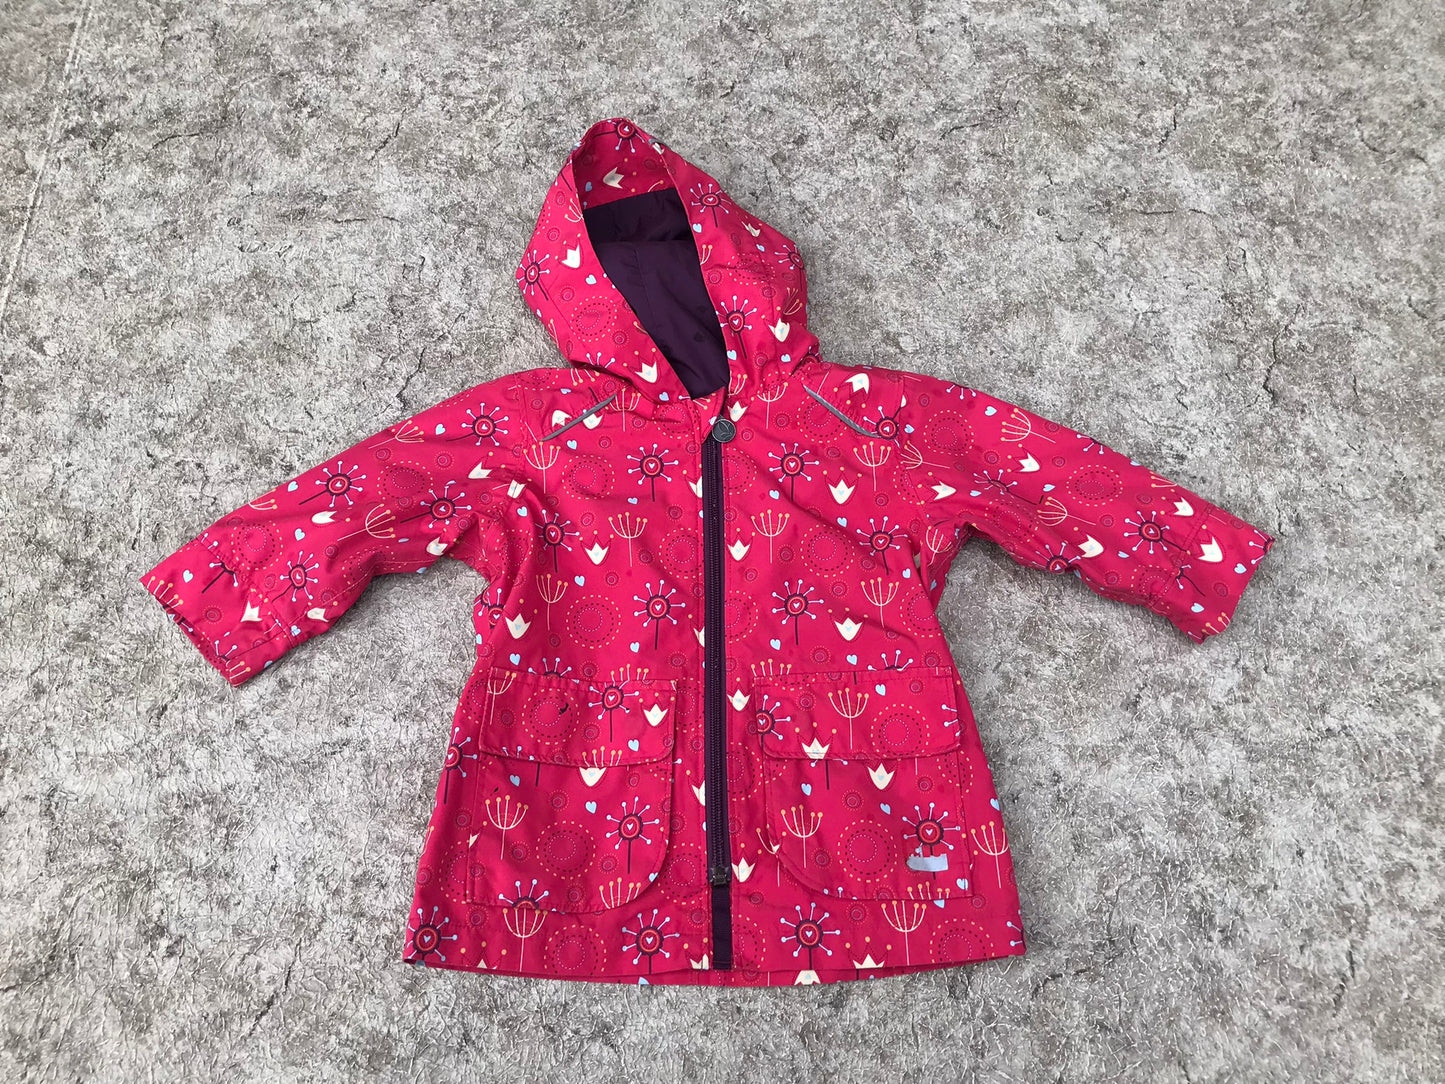 Rain Coat Child Size 12 Month MEC Pink Purple